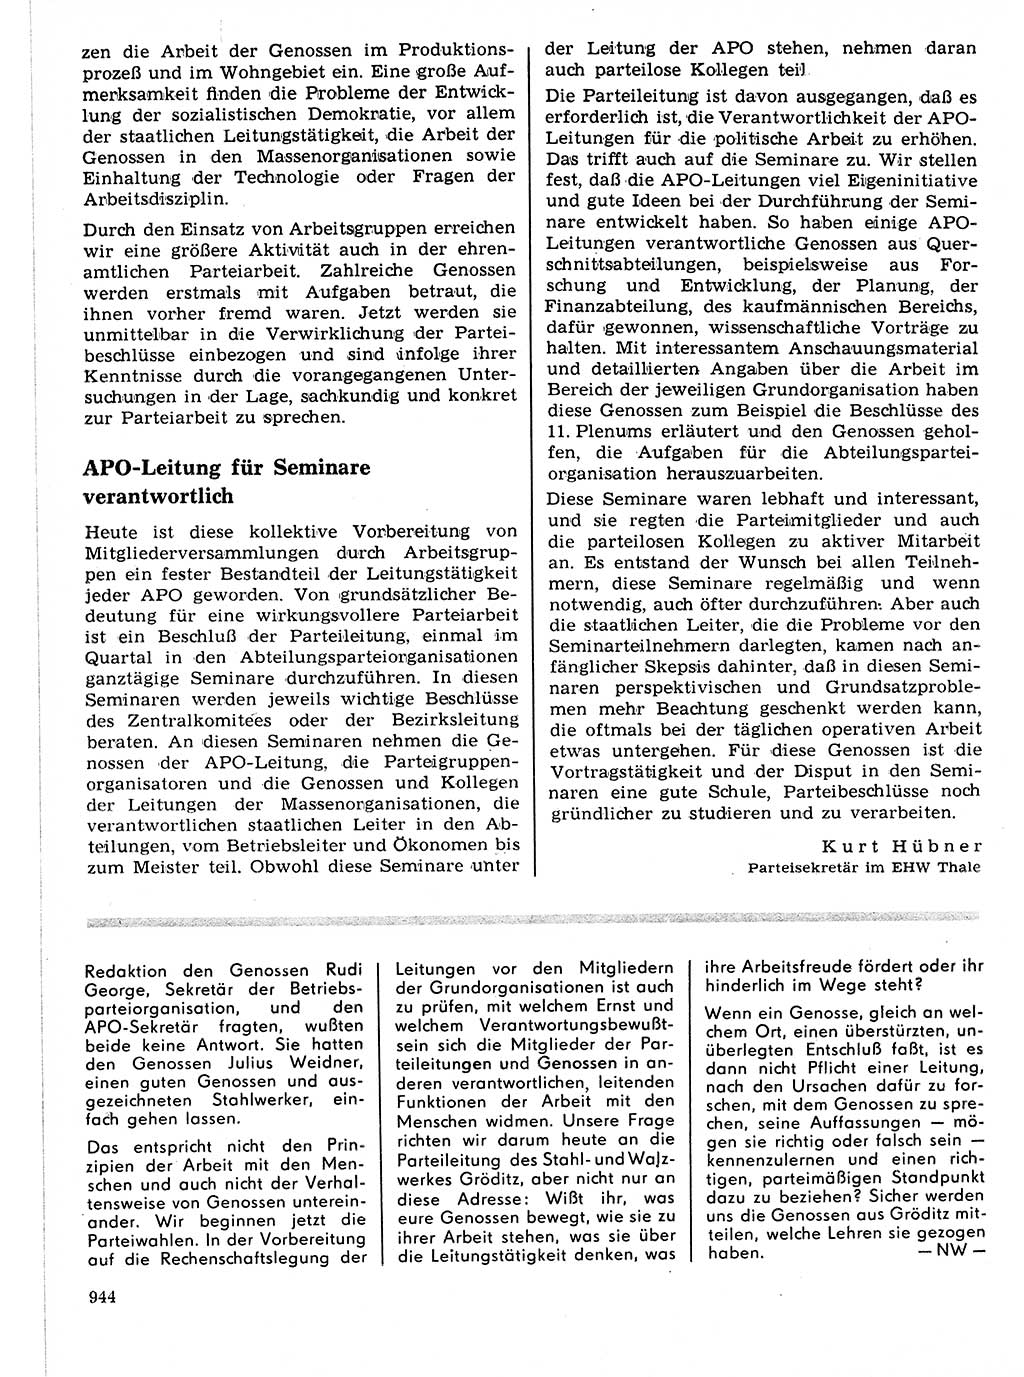 Neuer Weg (NW), Organ des Zentralkomitees (ZK) der SED (Sozialistische Einheitspartei Deutschlands) für Fragen des Parteilebens, 21. Jahrgang [Deutsche Demokratische Republik (DDR)] 1966, Seite 944 (NW ZK SED DDR 1966, S. 944)